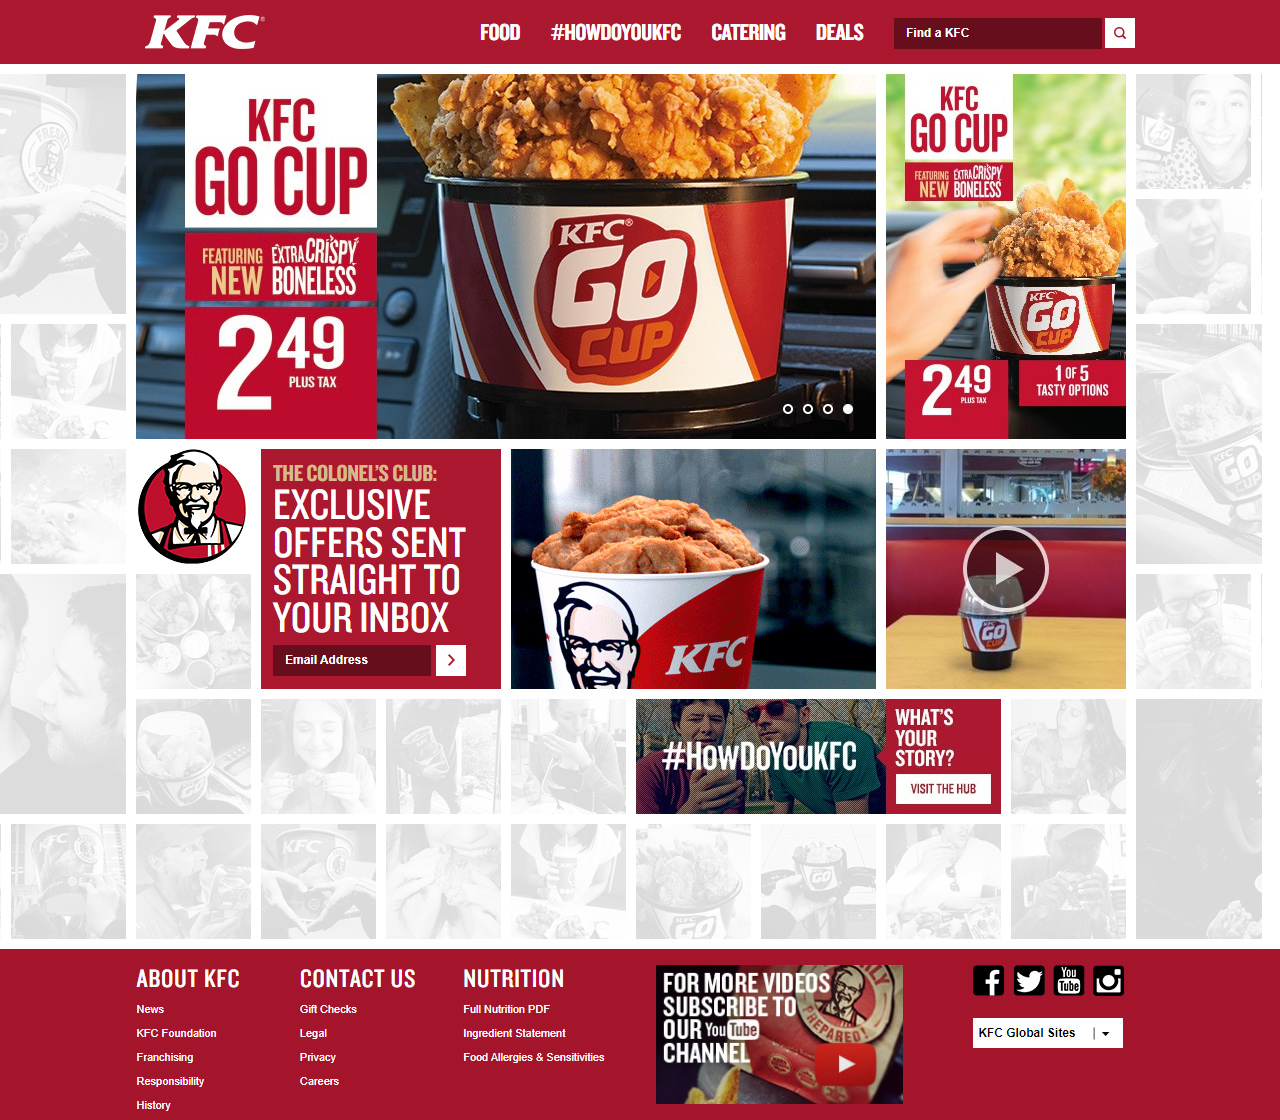 KFC in 2013